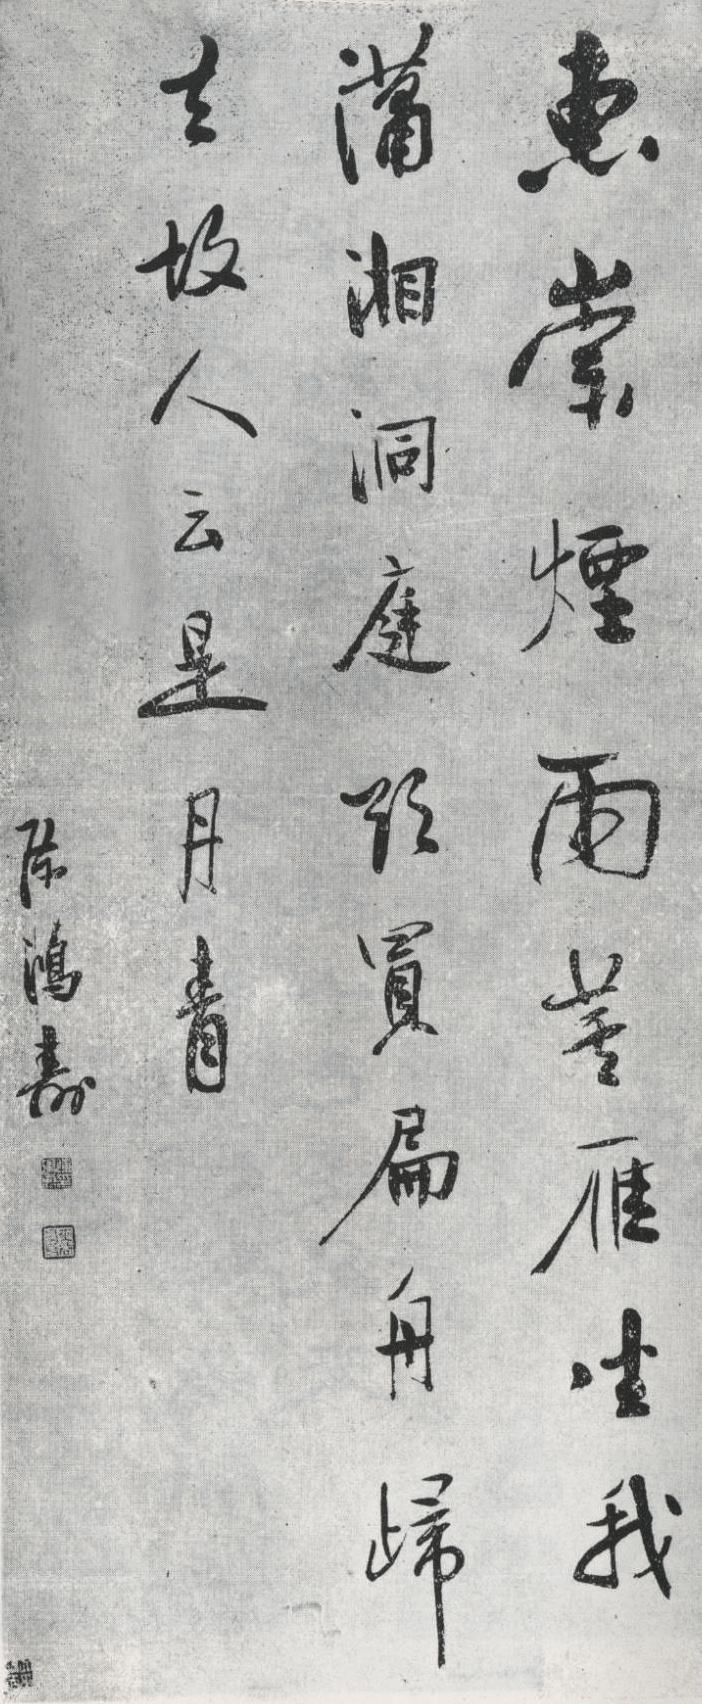 陳鴻壽(清代書畫家、篆刻家)